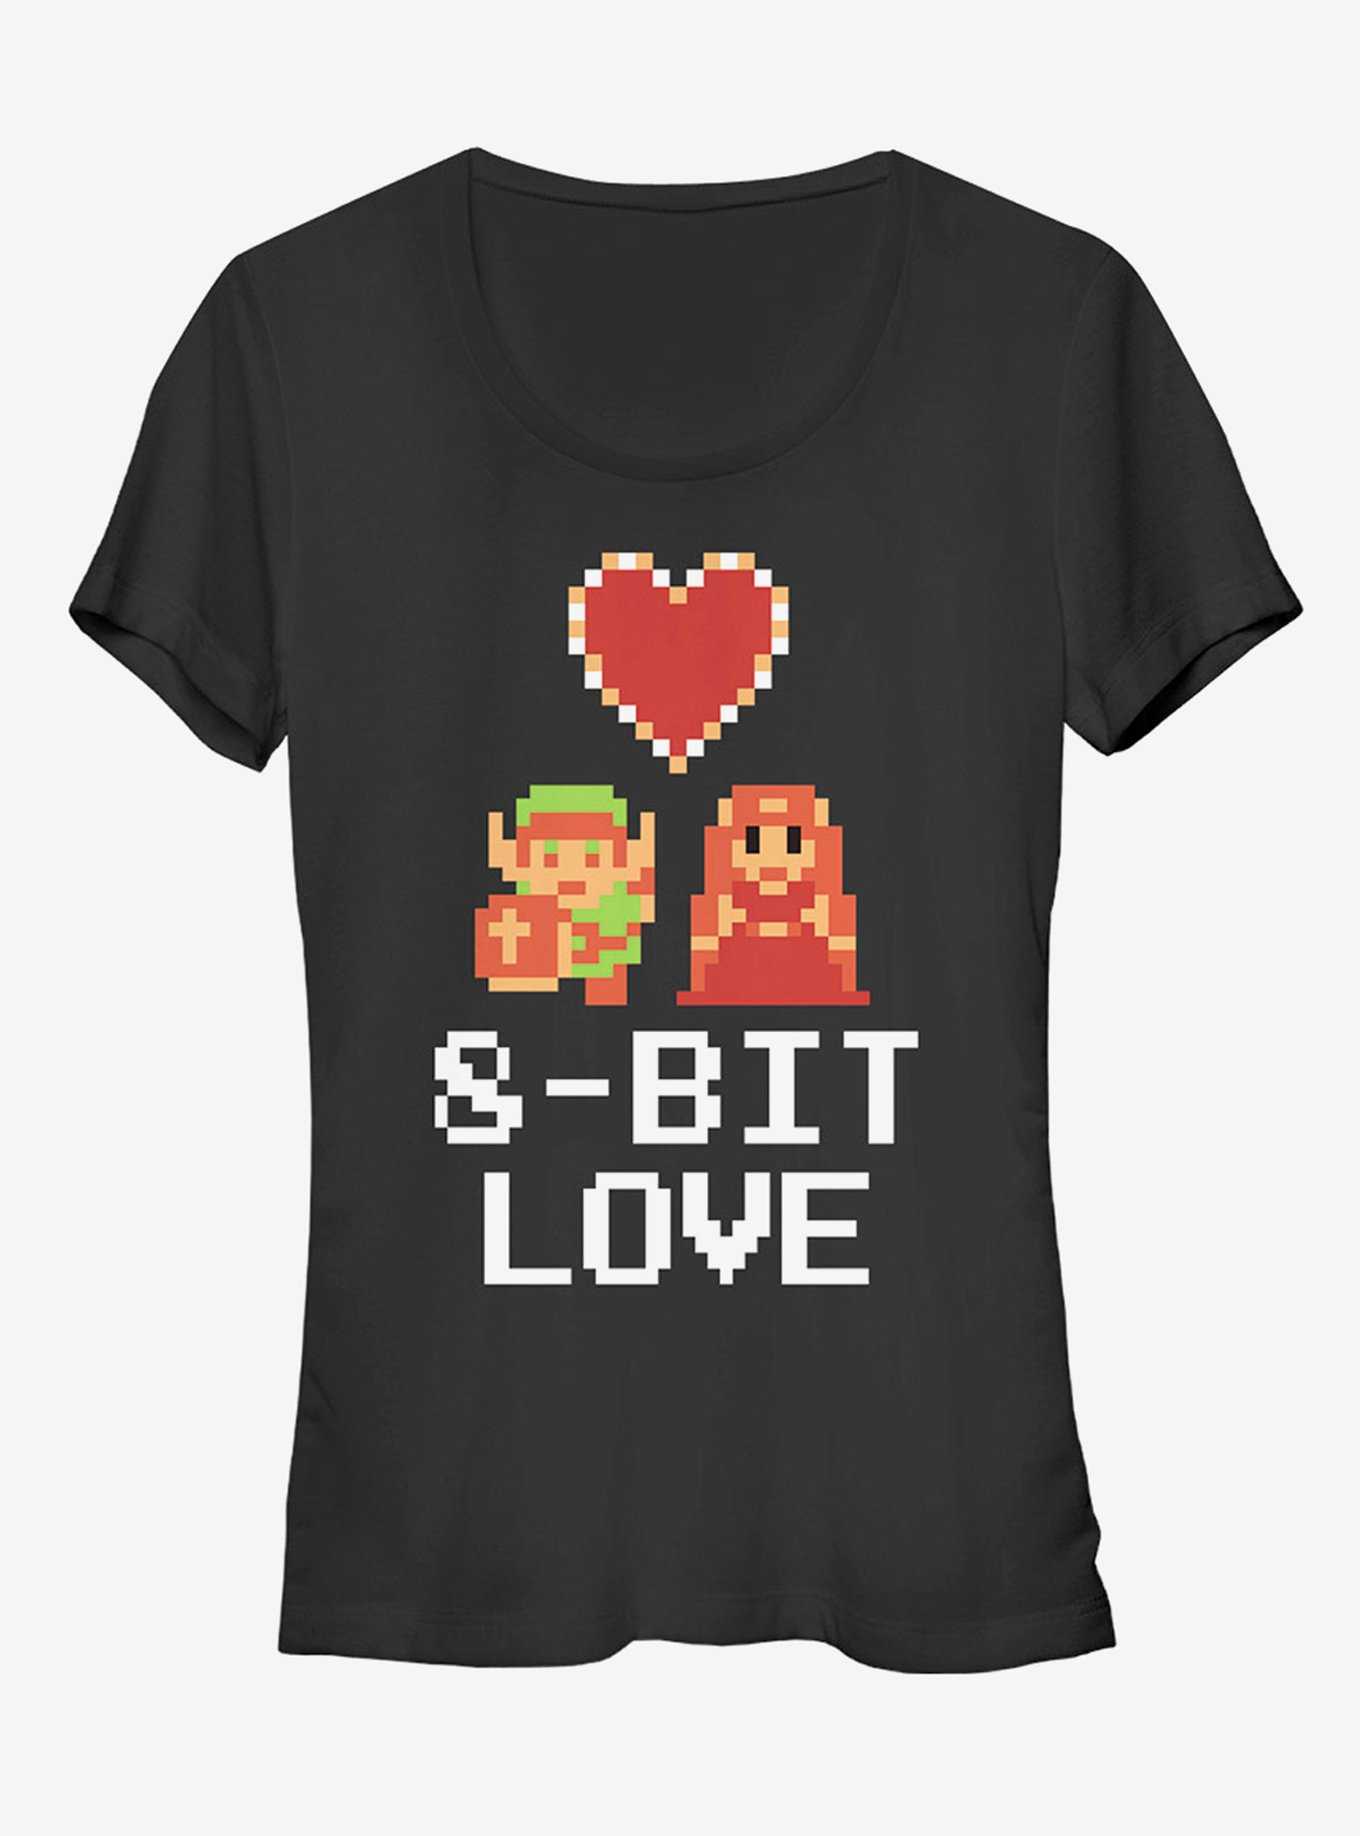 Nintendo Legend of Zelda 8-Bit Love Girls T-Shirt, , hi-res